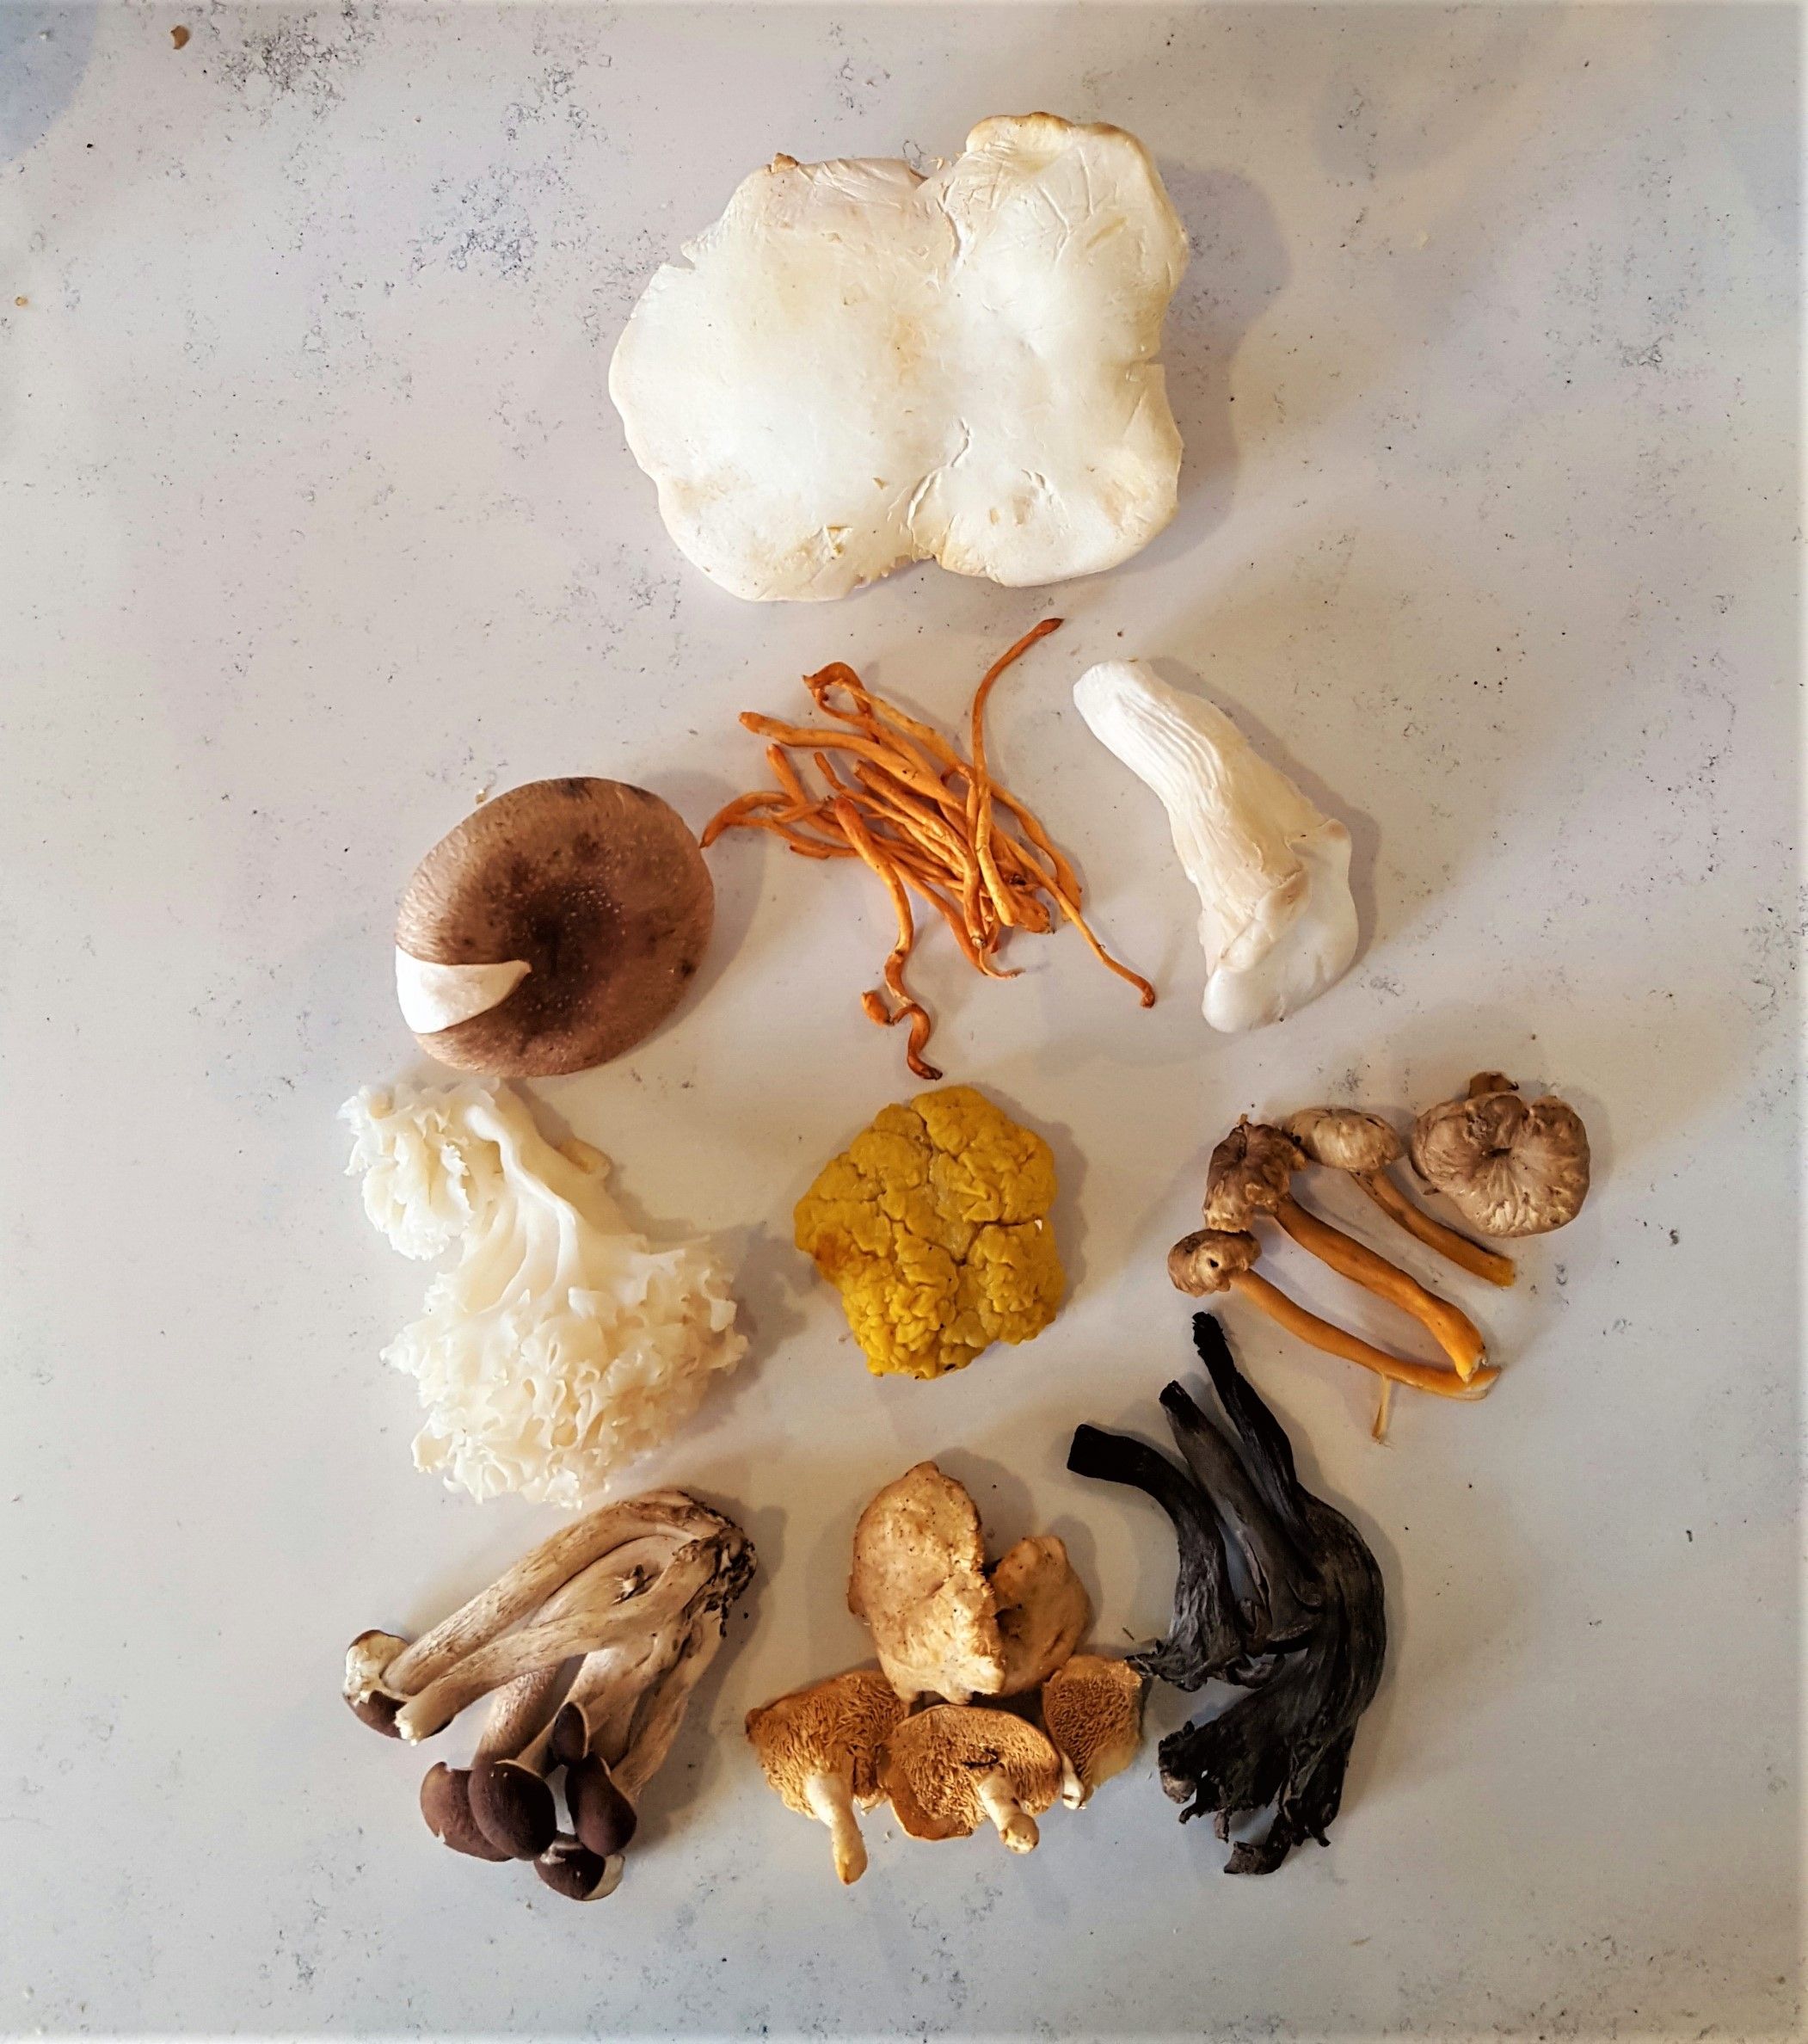 12 mushrooms